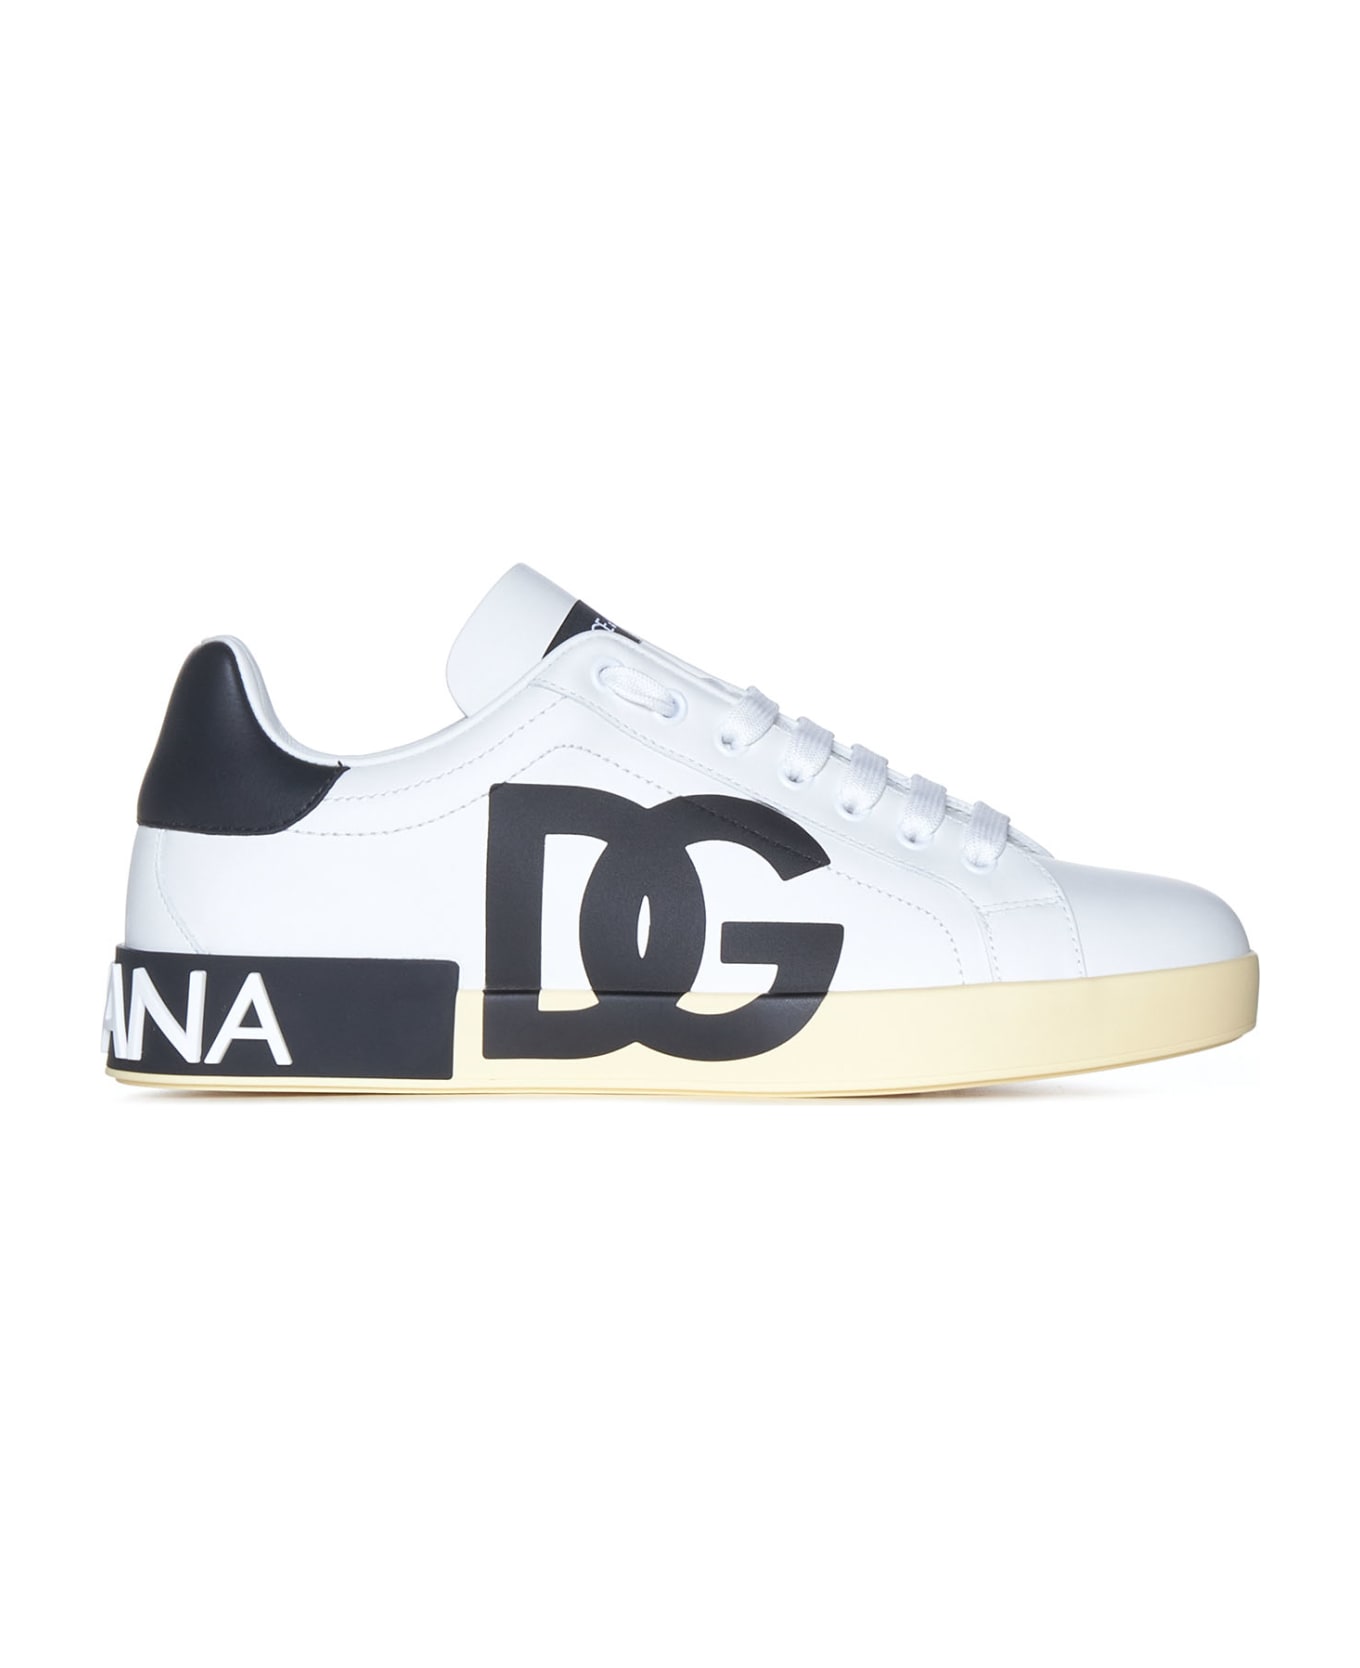 Dolce & Gabbana Portofino Nappa Sneaker With Printed Dg Logo - White スニーカー